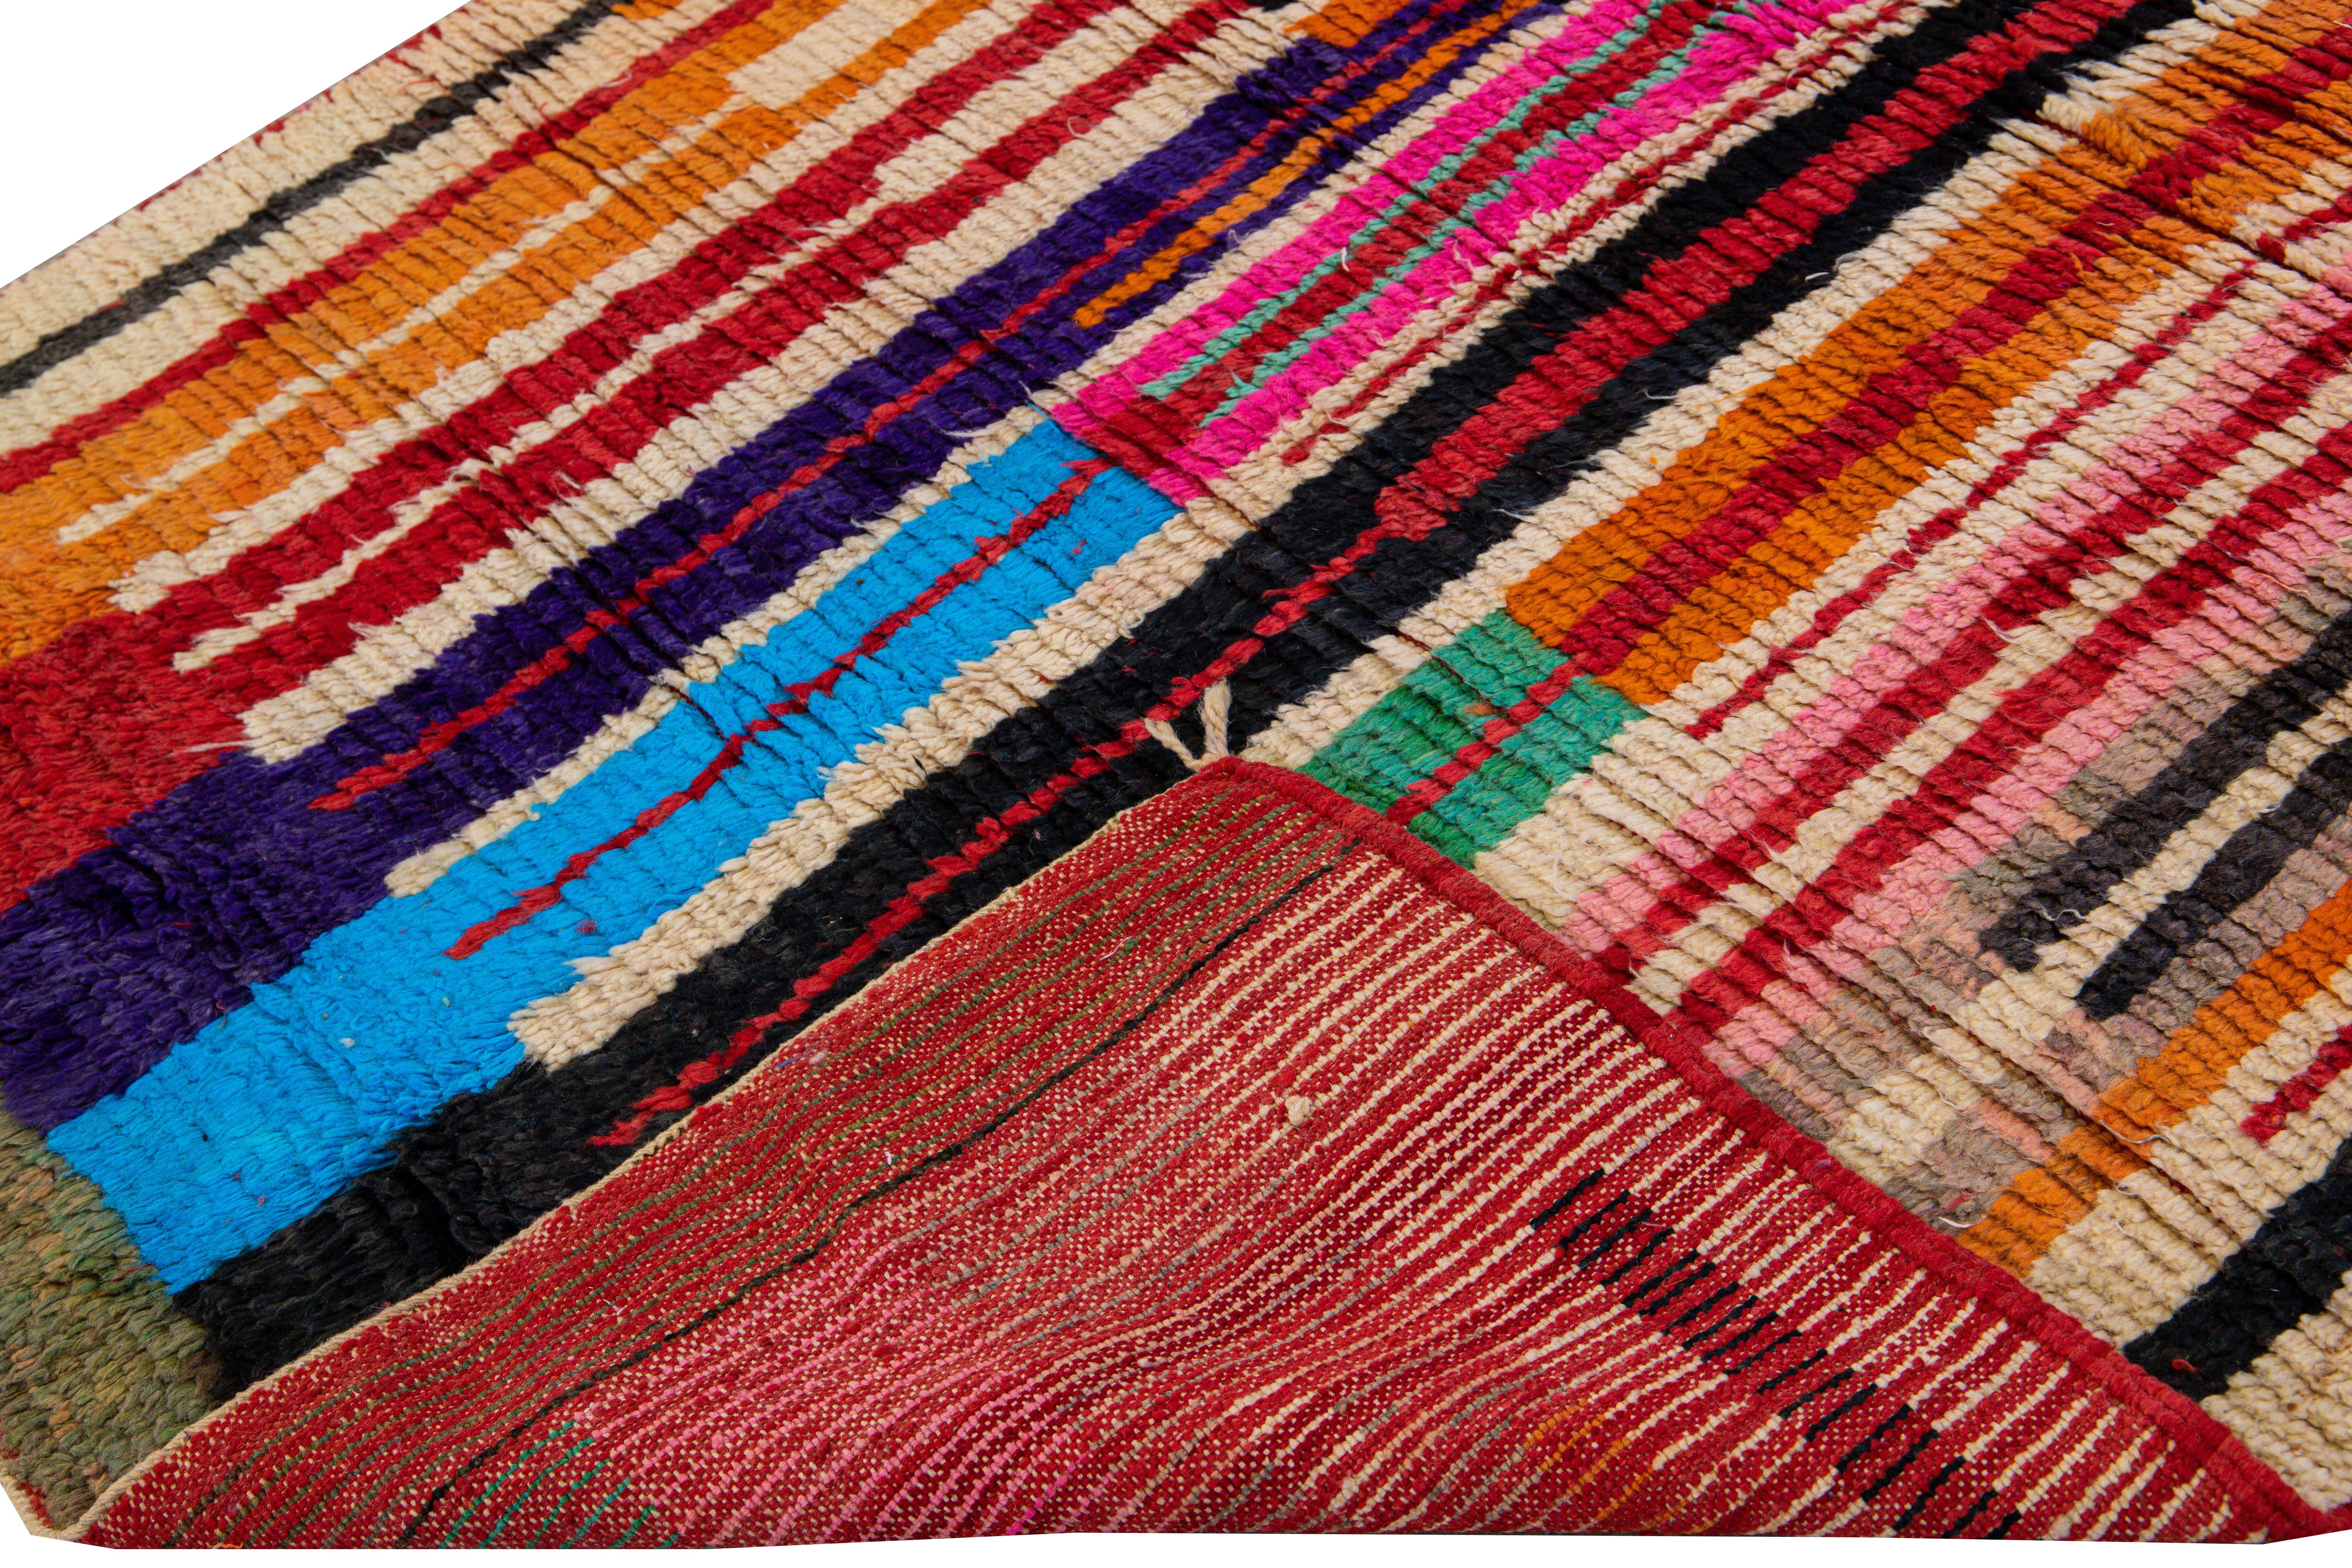 Schöne Vintage Beni Ourain marokkanischen handgeknüpften Wollteppich. Dieser kunstvolle marokkanische Teppich ist mit mehrfarbigen Akzenten in einem herrlichen abstrakten expressionistischen Muster gestaltet.

Dieser Teppich misst: 5'8